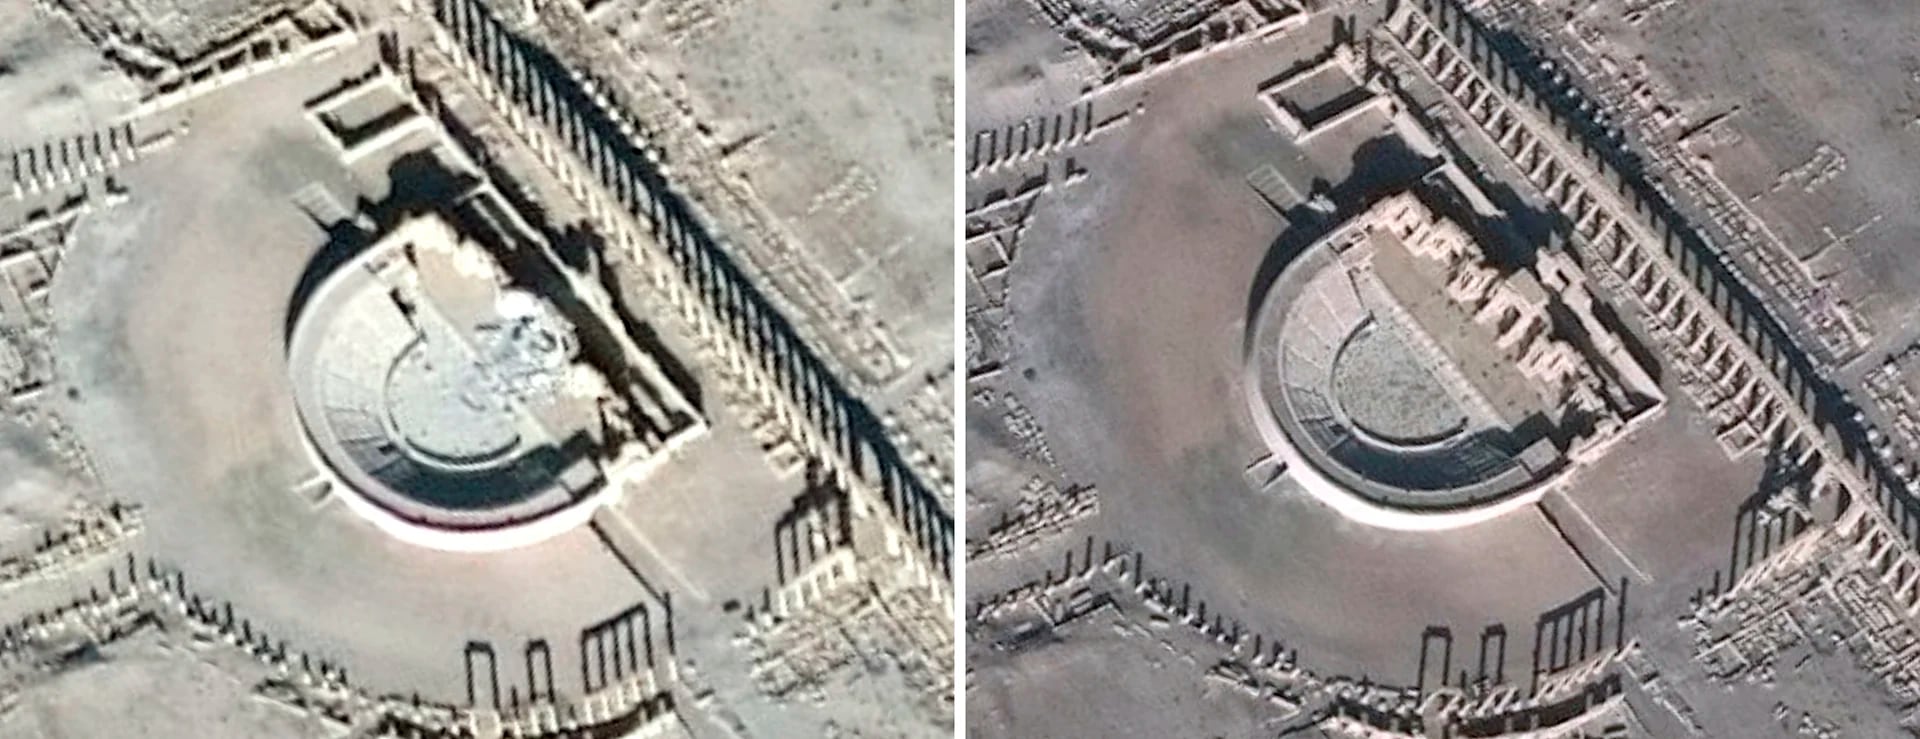 Las fotos satelitales que muestran el daño que provocaron los terroristas en el anfiteatro romano de Palmira (AFP Photo / Unitar-Unosat)